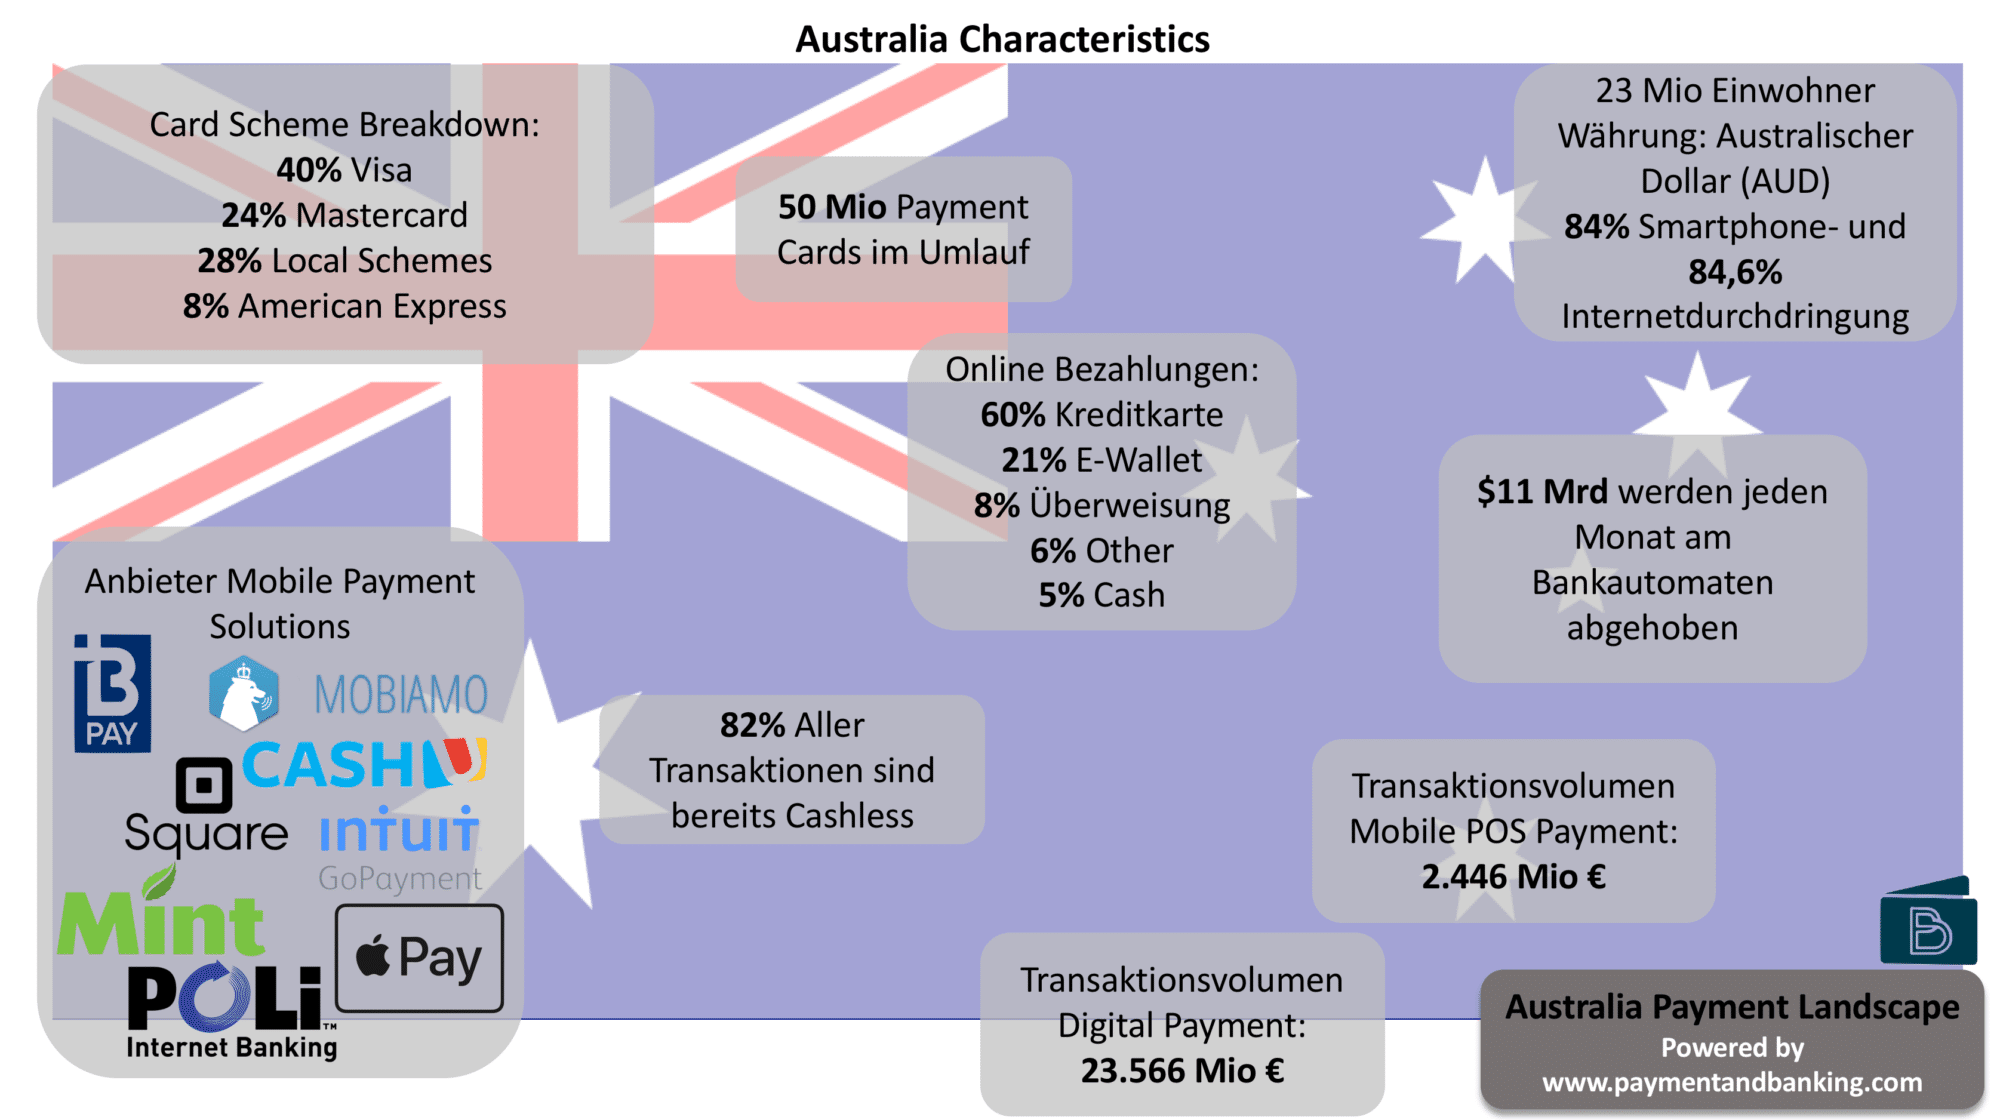 Länderserie - wie zahlt die Welt? Payment Characteristics Australia